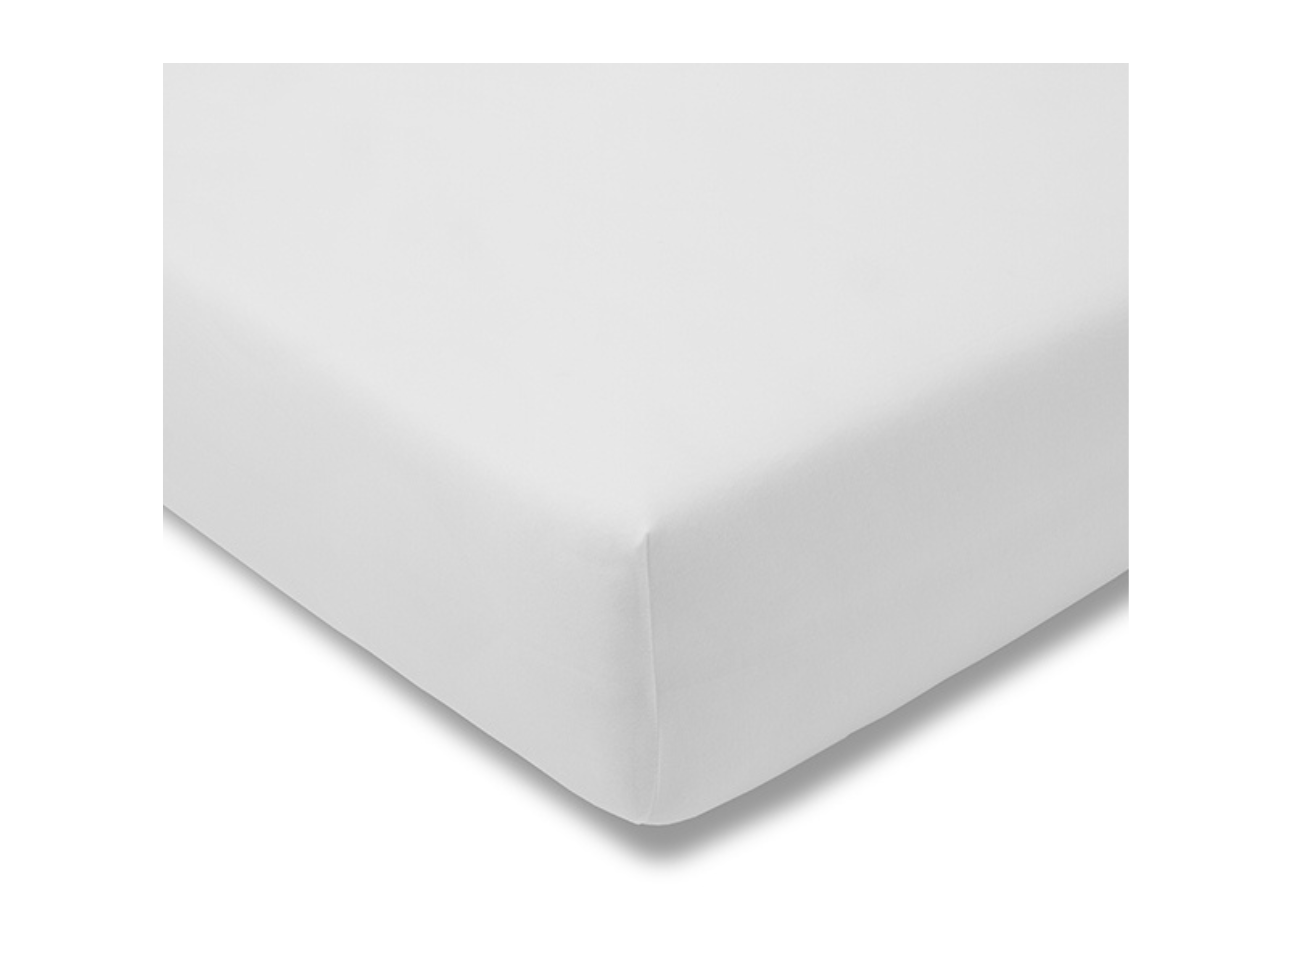 Feinjersey Qualitäts-Spannbetttuch  Farbe: Weiß , Größe.: 140-150 x 200 cm , Höhe: 18 cm  B-Ware